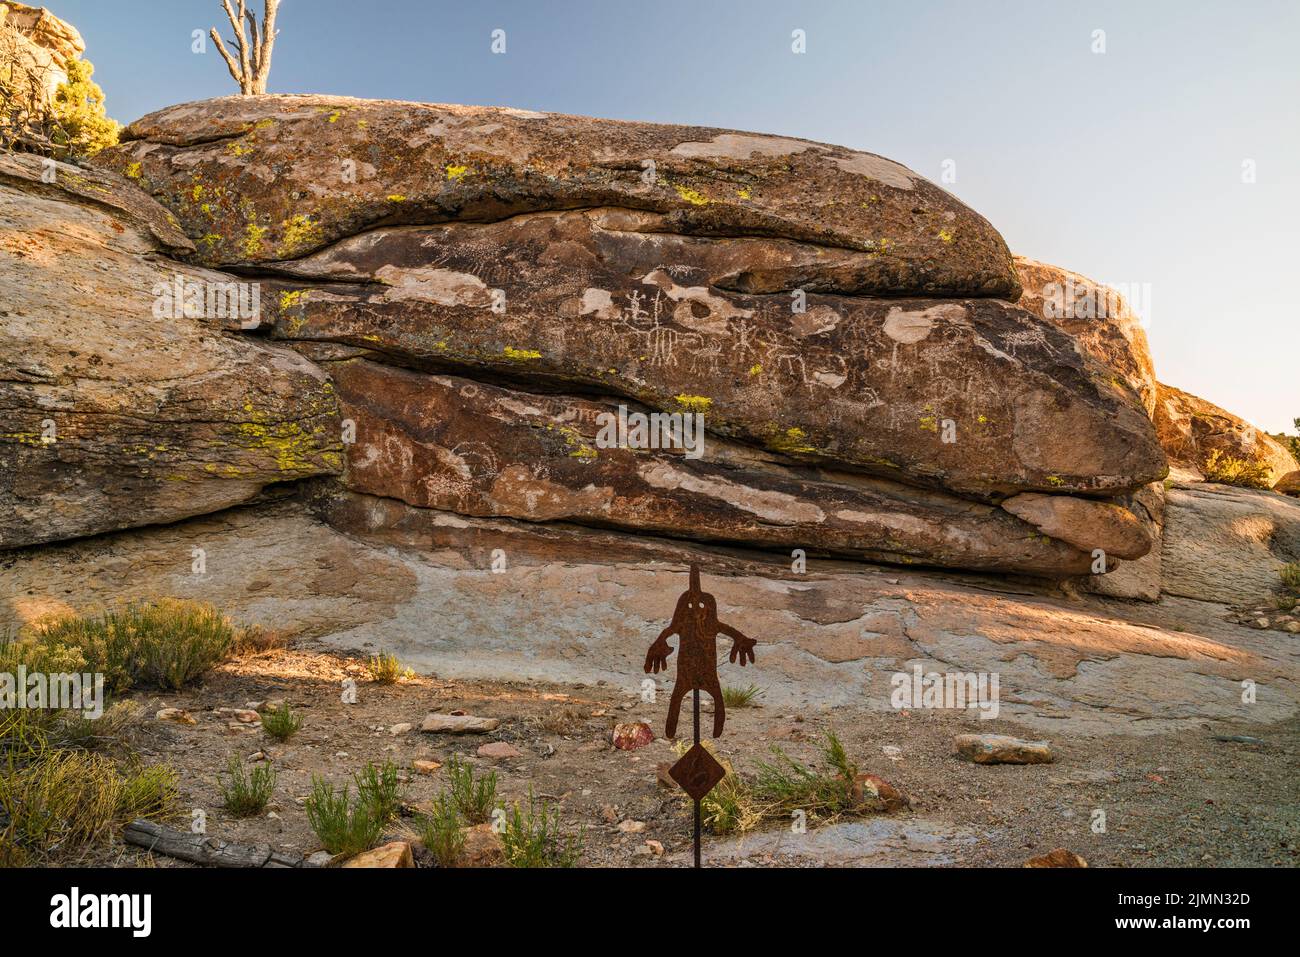 Petroglifos en la roca de tuff, marcador de senderos, Distrito Arqueológico Mt Irish, Locus Occidental, Monumento Nacional Basin and Range, Nevada, EE.UU Foto de stock